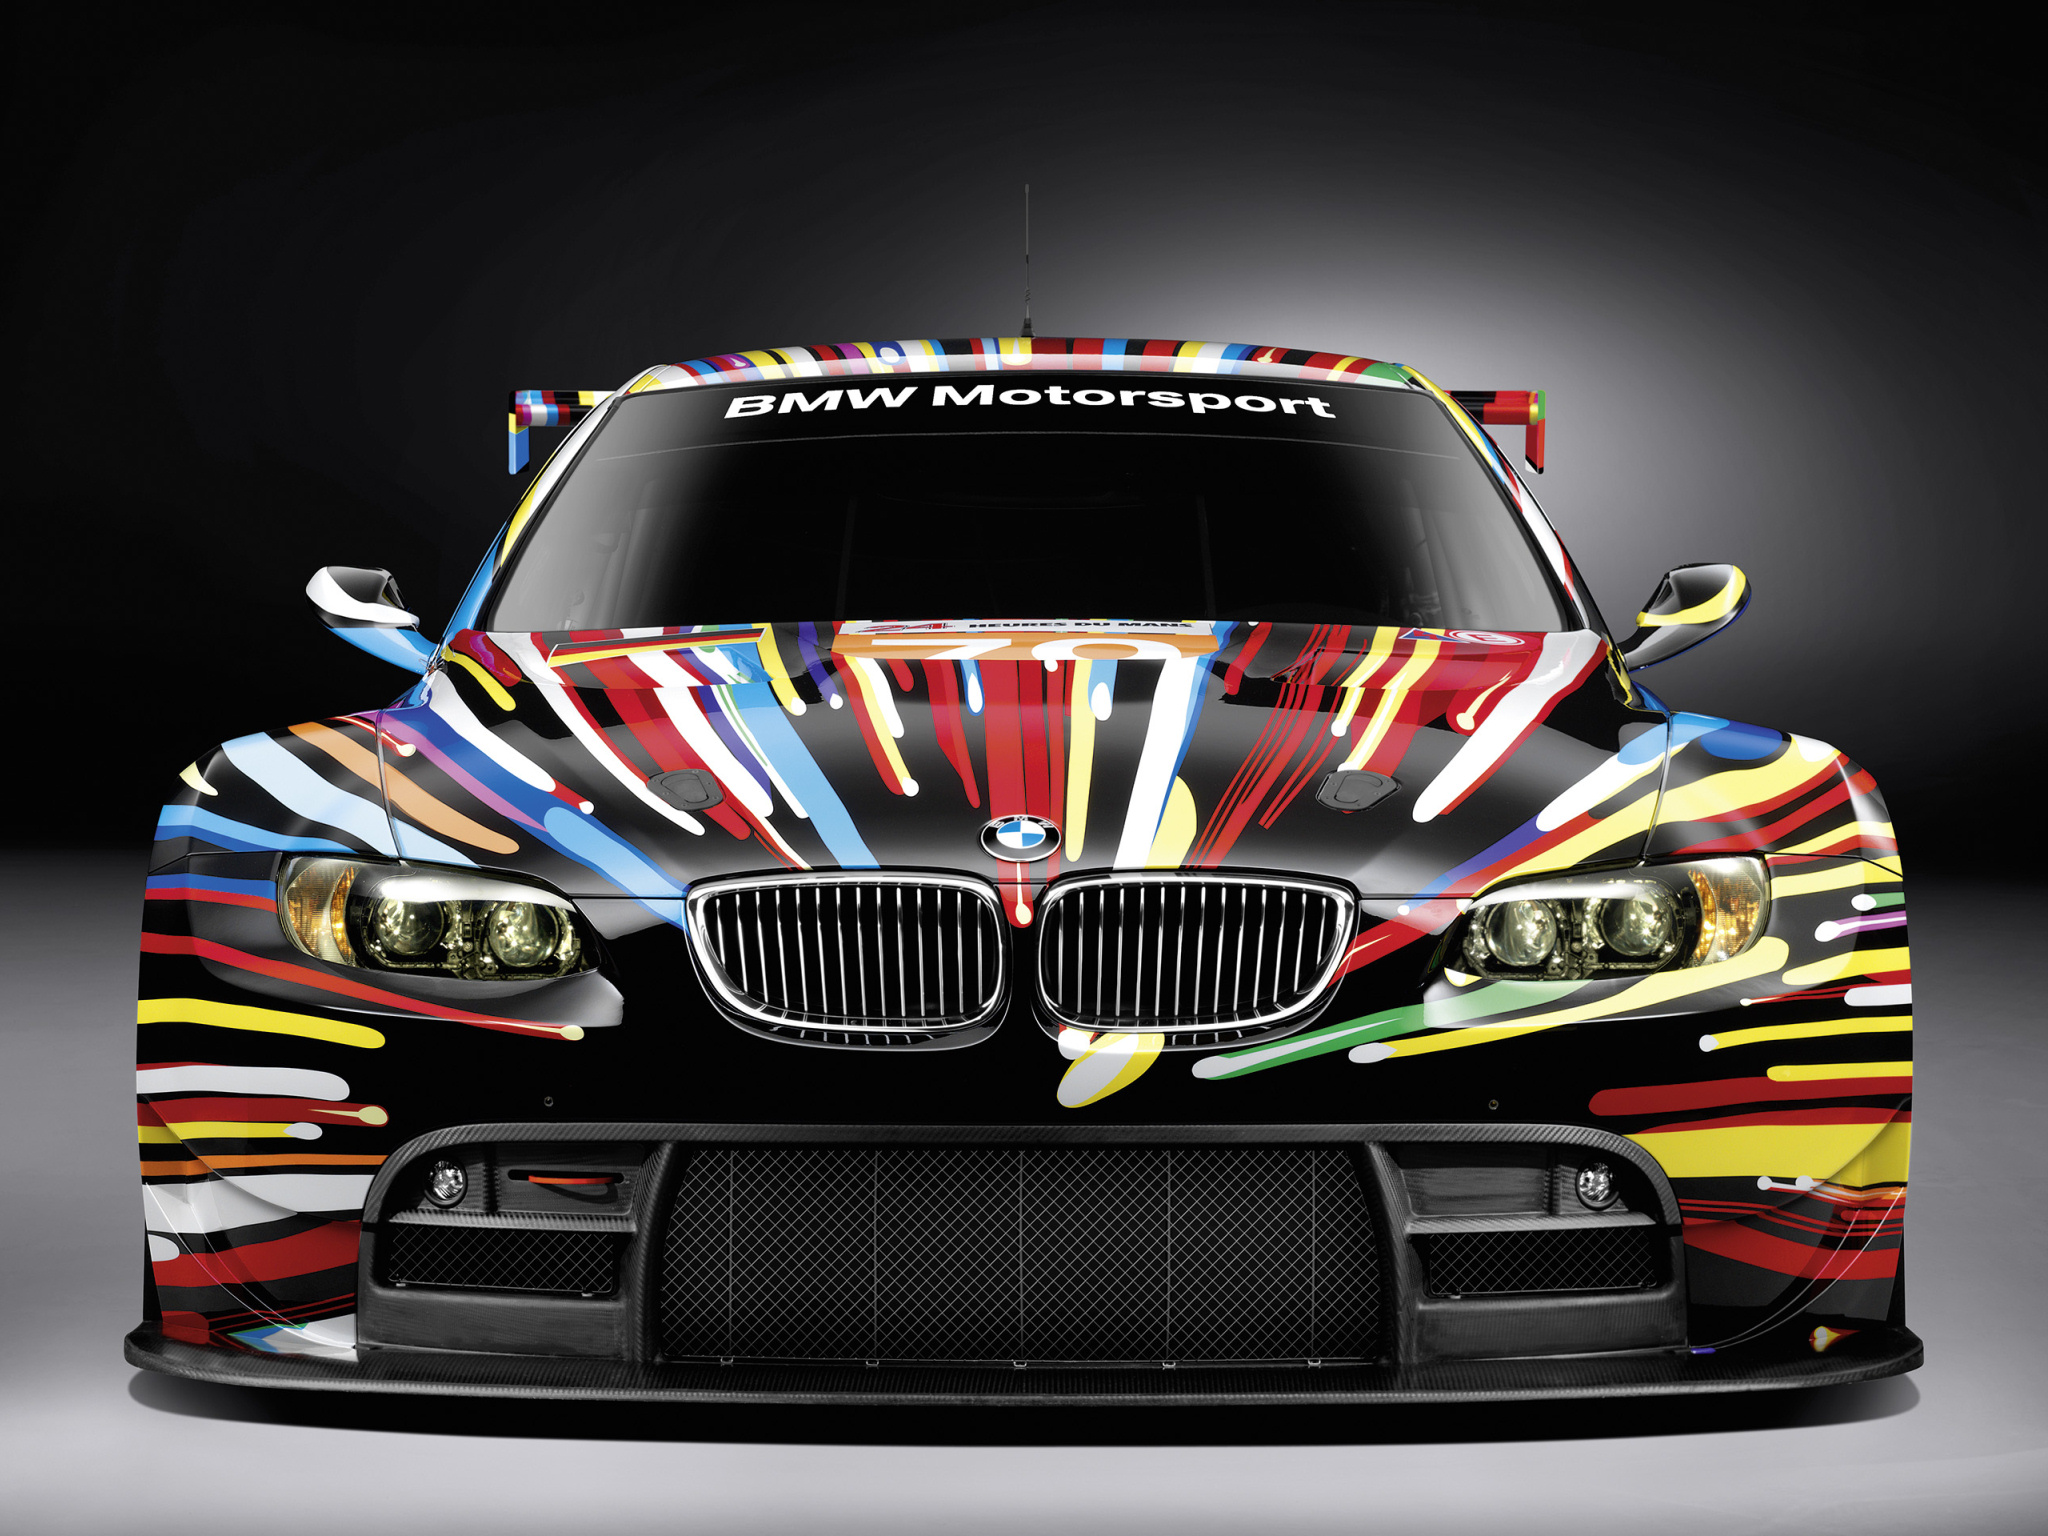 Bmw M3 Gt2 Jeff Koons Art Car E92 Wallpaperbmw